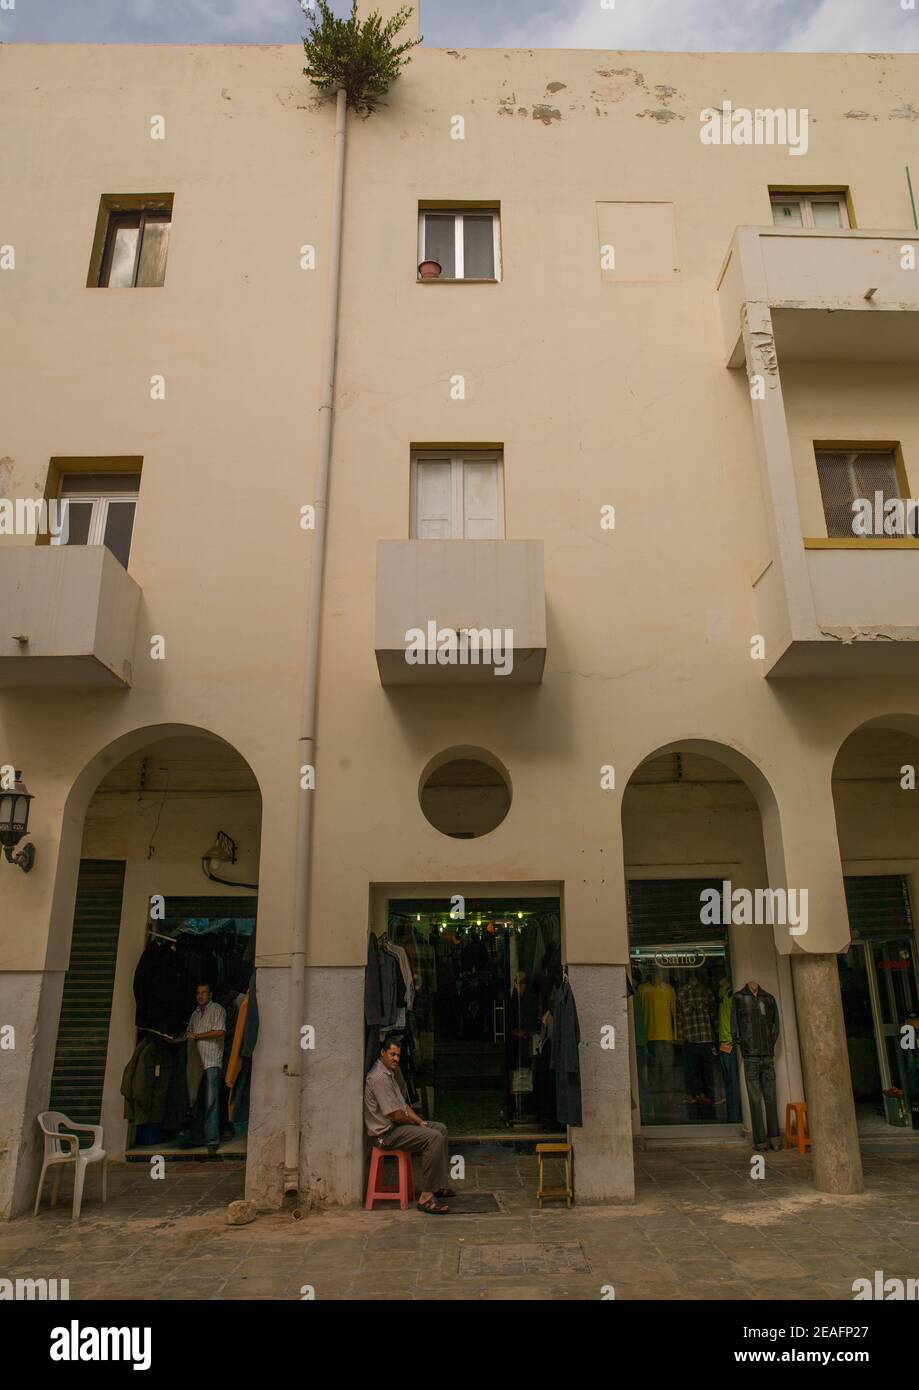 Bâtiment colonial italien, Cyrenaica, Benghazi, Libye Banque D'Images